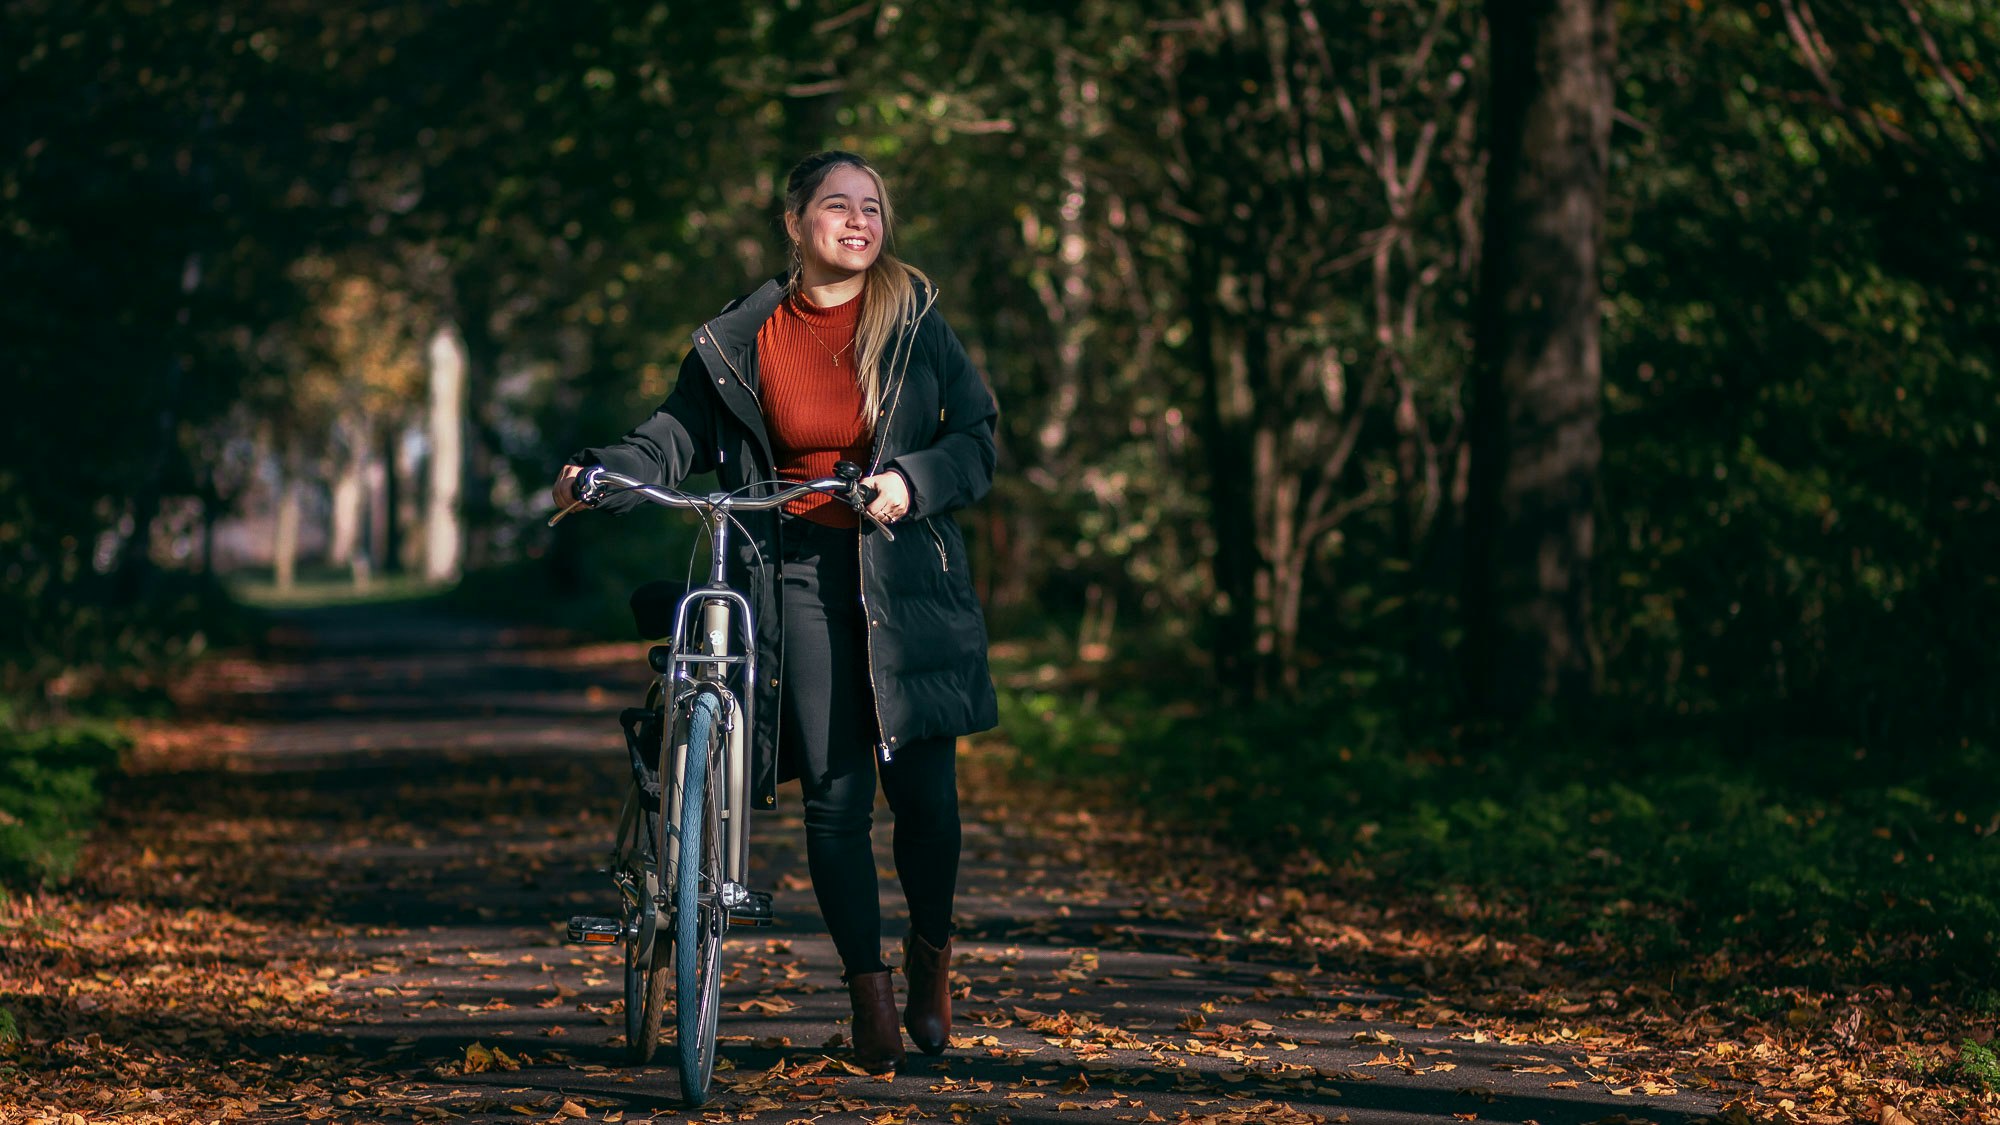 Lisandra walking her bike among trees